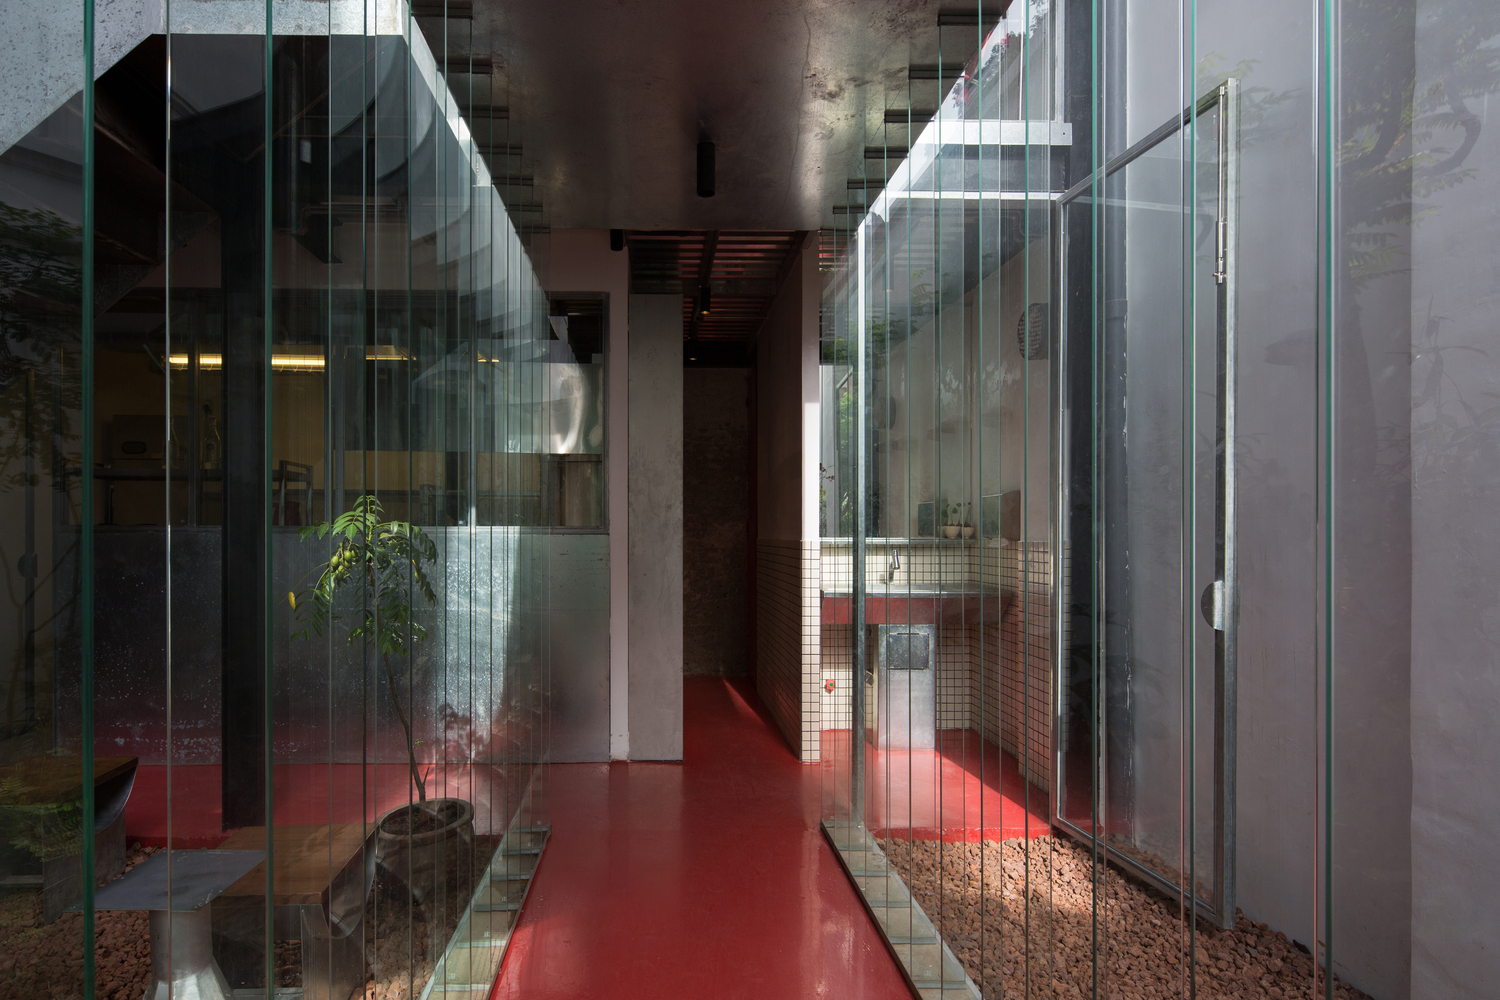 hình ảnh hành lang quán cà phê với sàn lát vật liệu màu đỏ, tường kính trong suốt hai bên